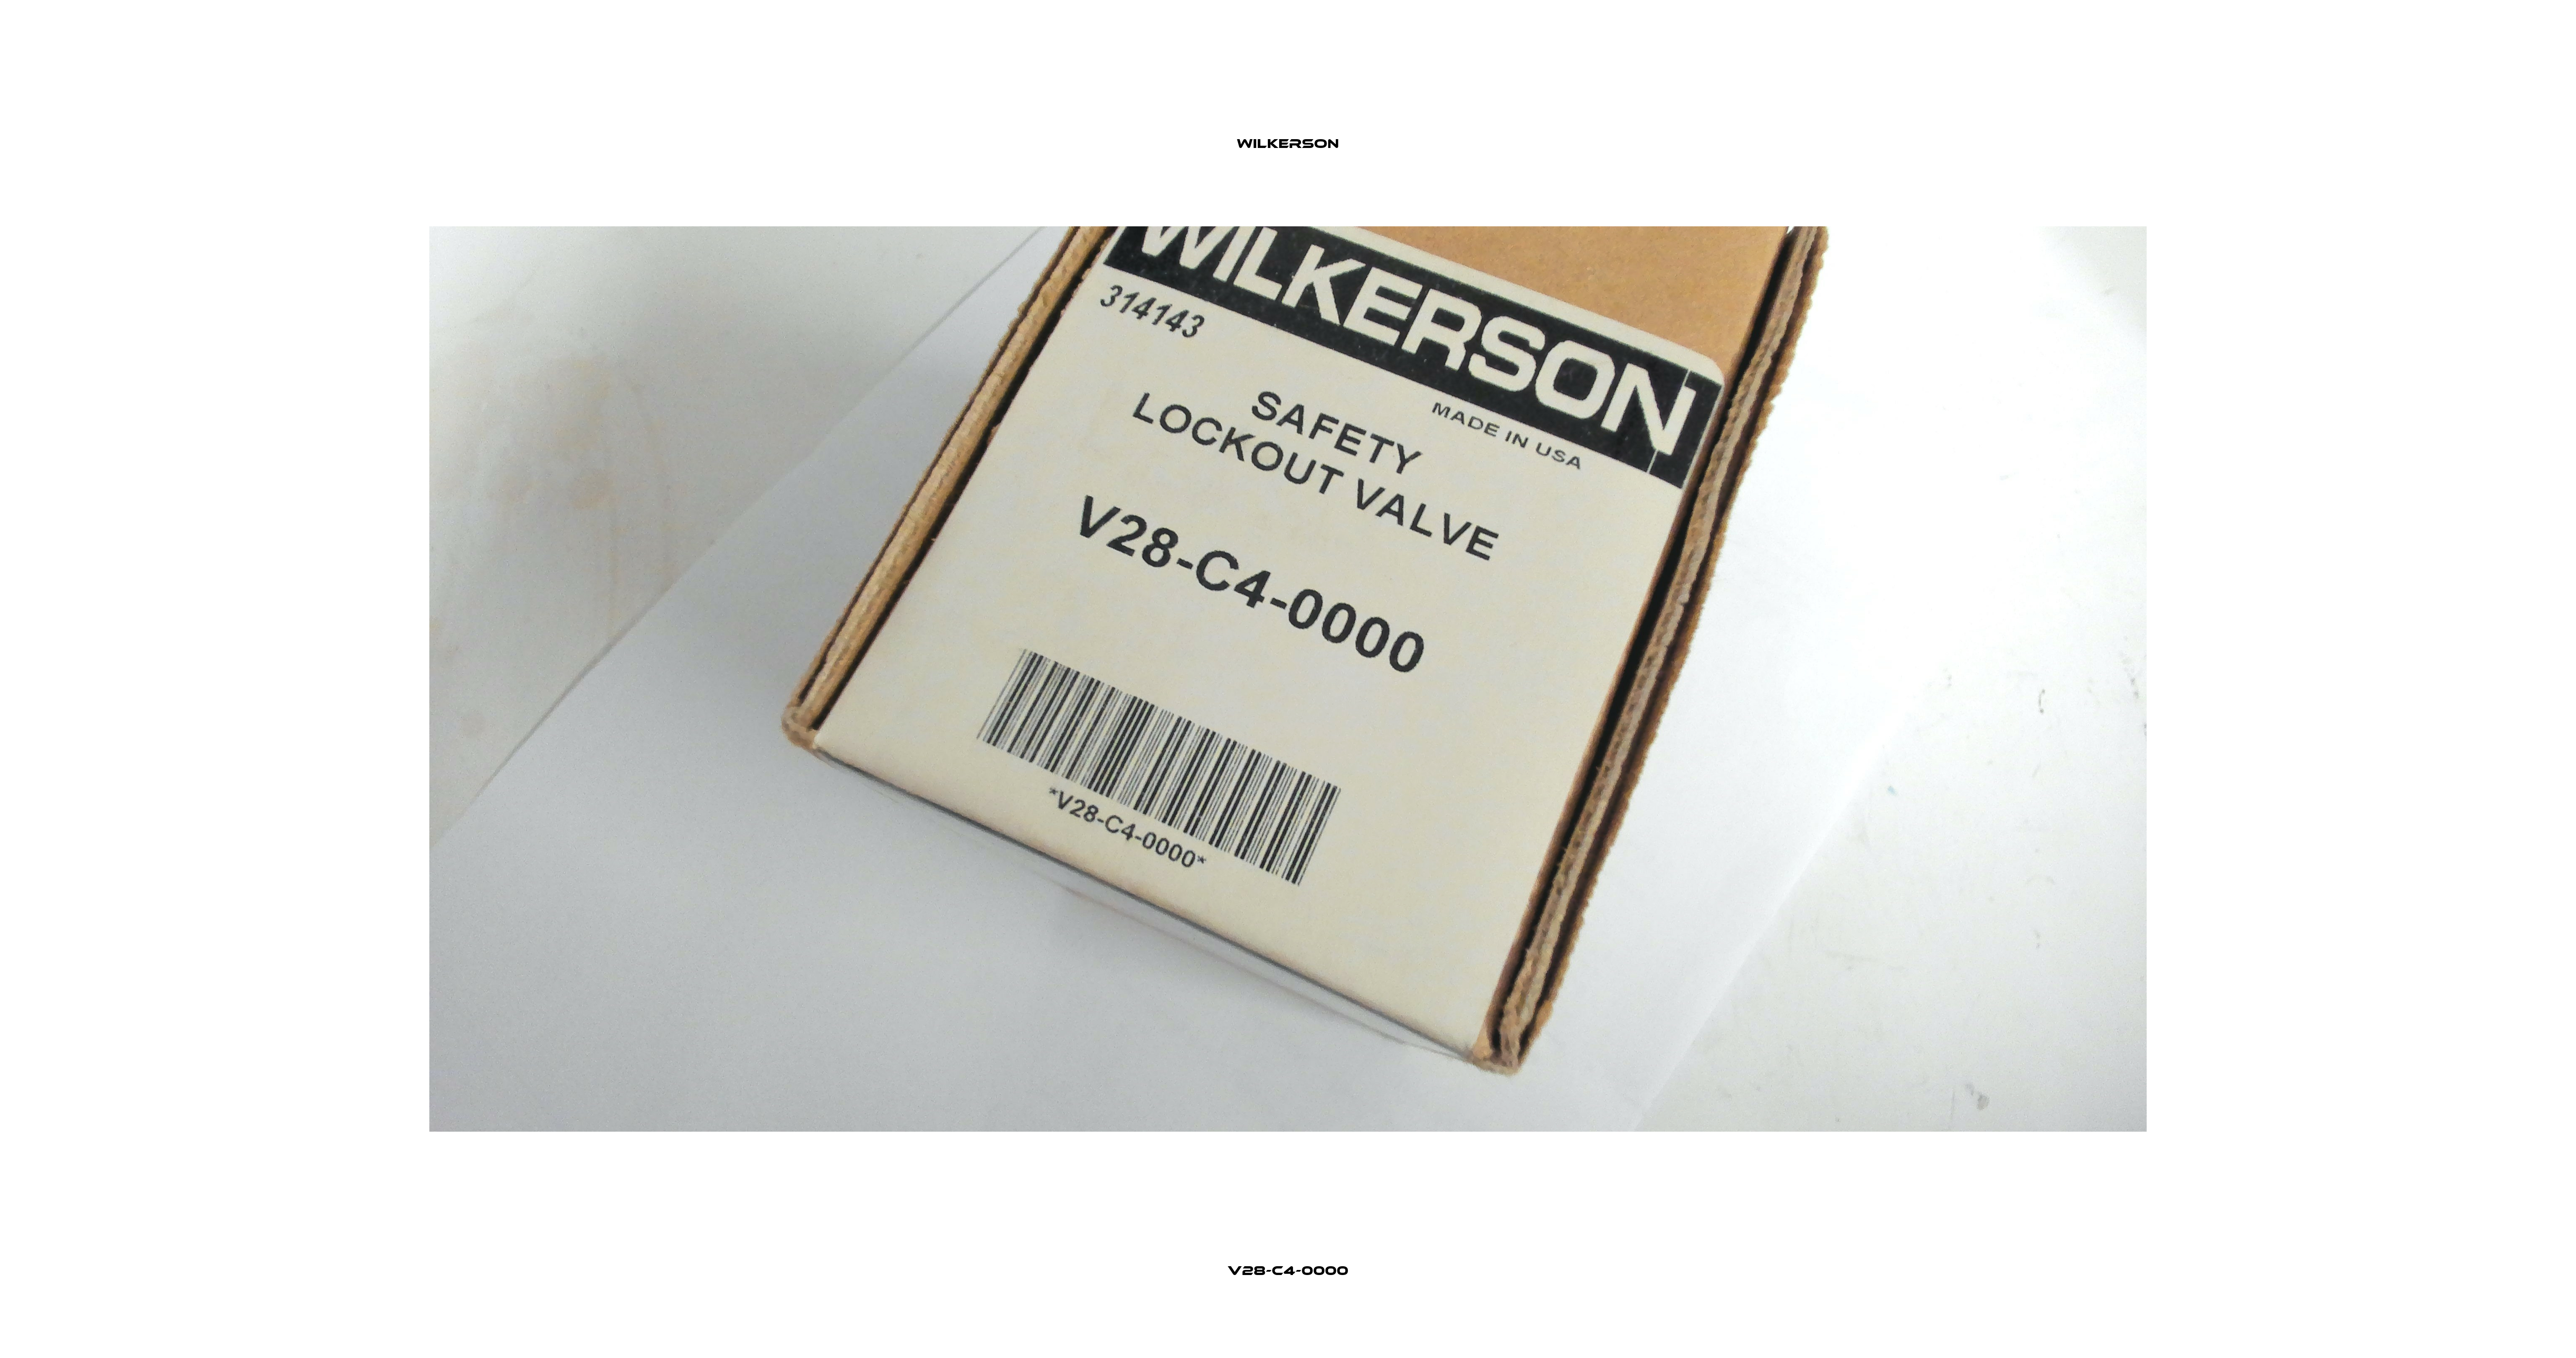 V28-C4-0000 Wilkerson